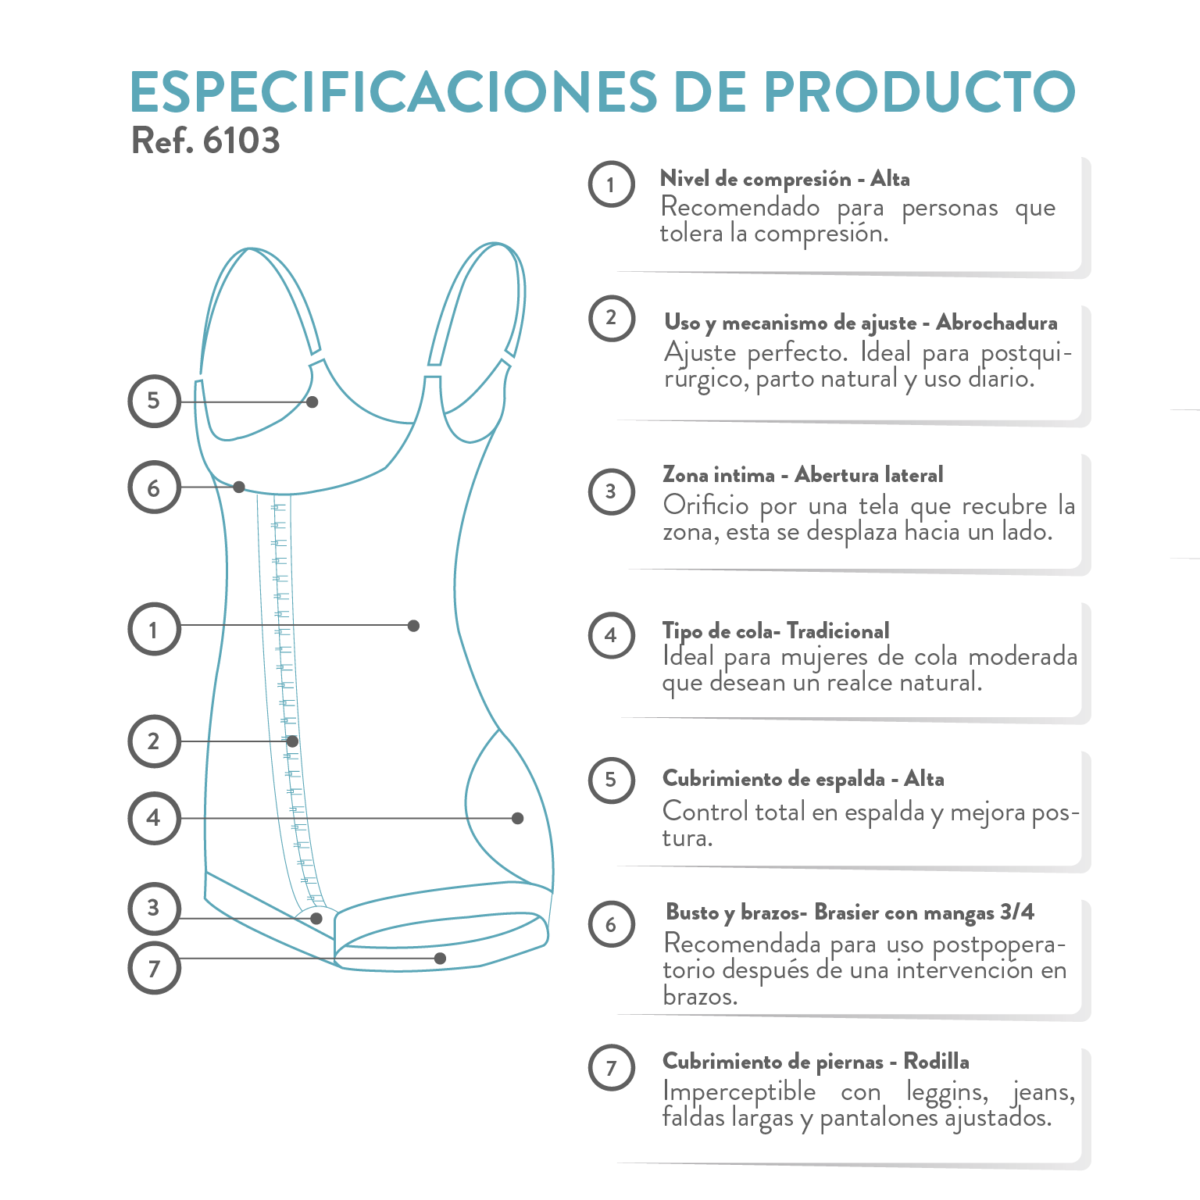 La faja colombiana completa a la rodilla permite mayor cubrimiento y ajuste en espalda, zona axilar y busto. Para uso diario, postquirúrgico y posparto.